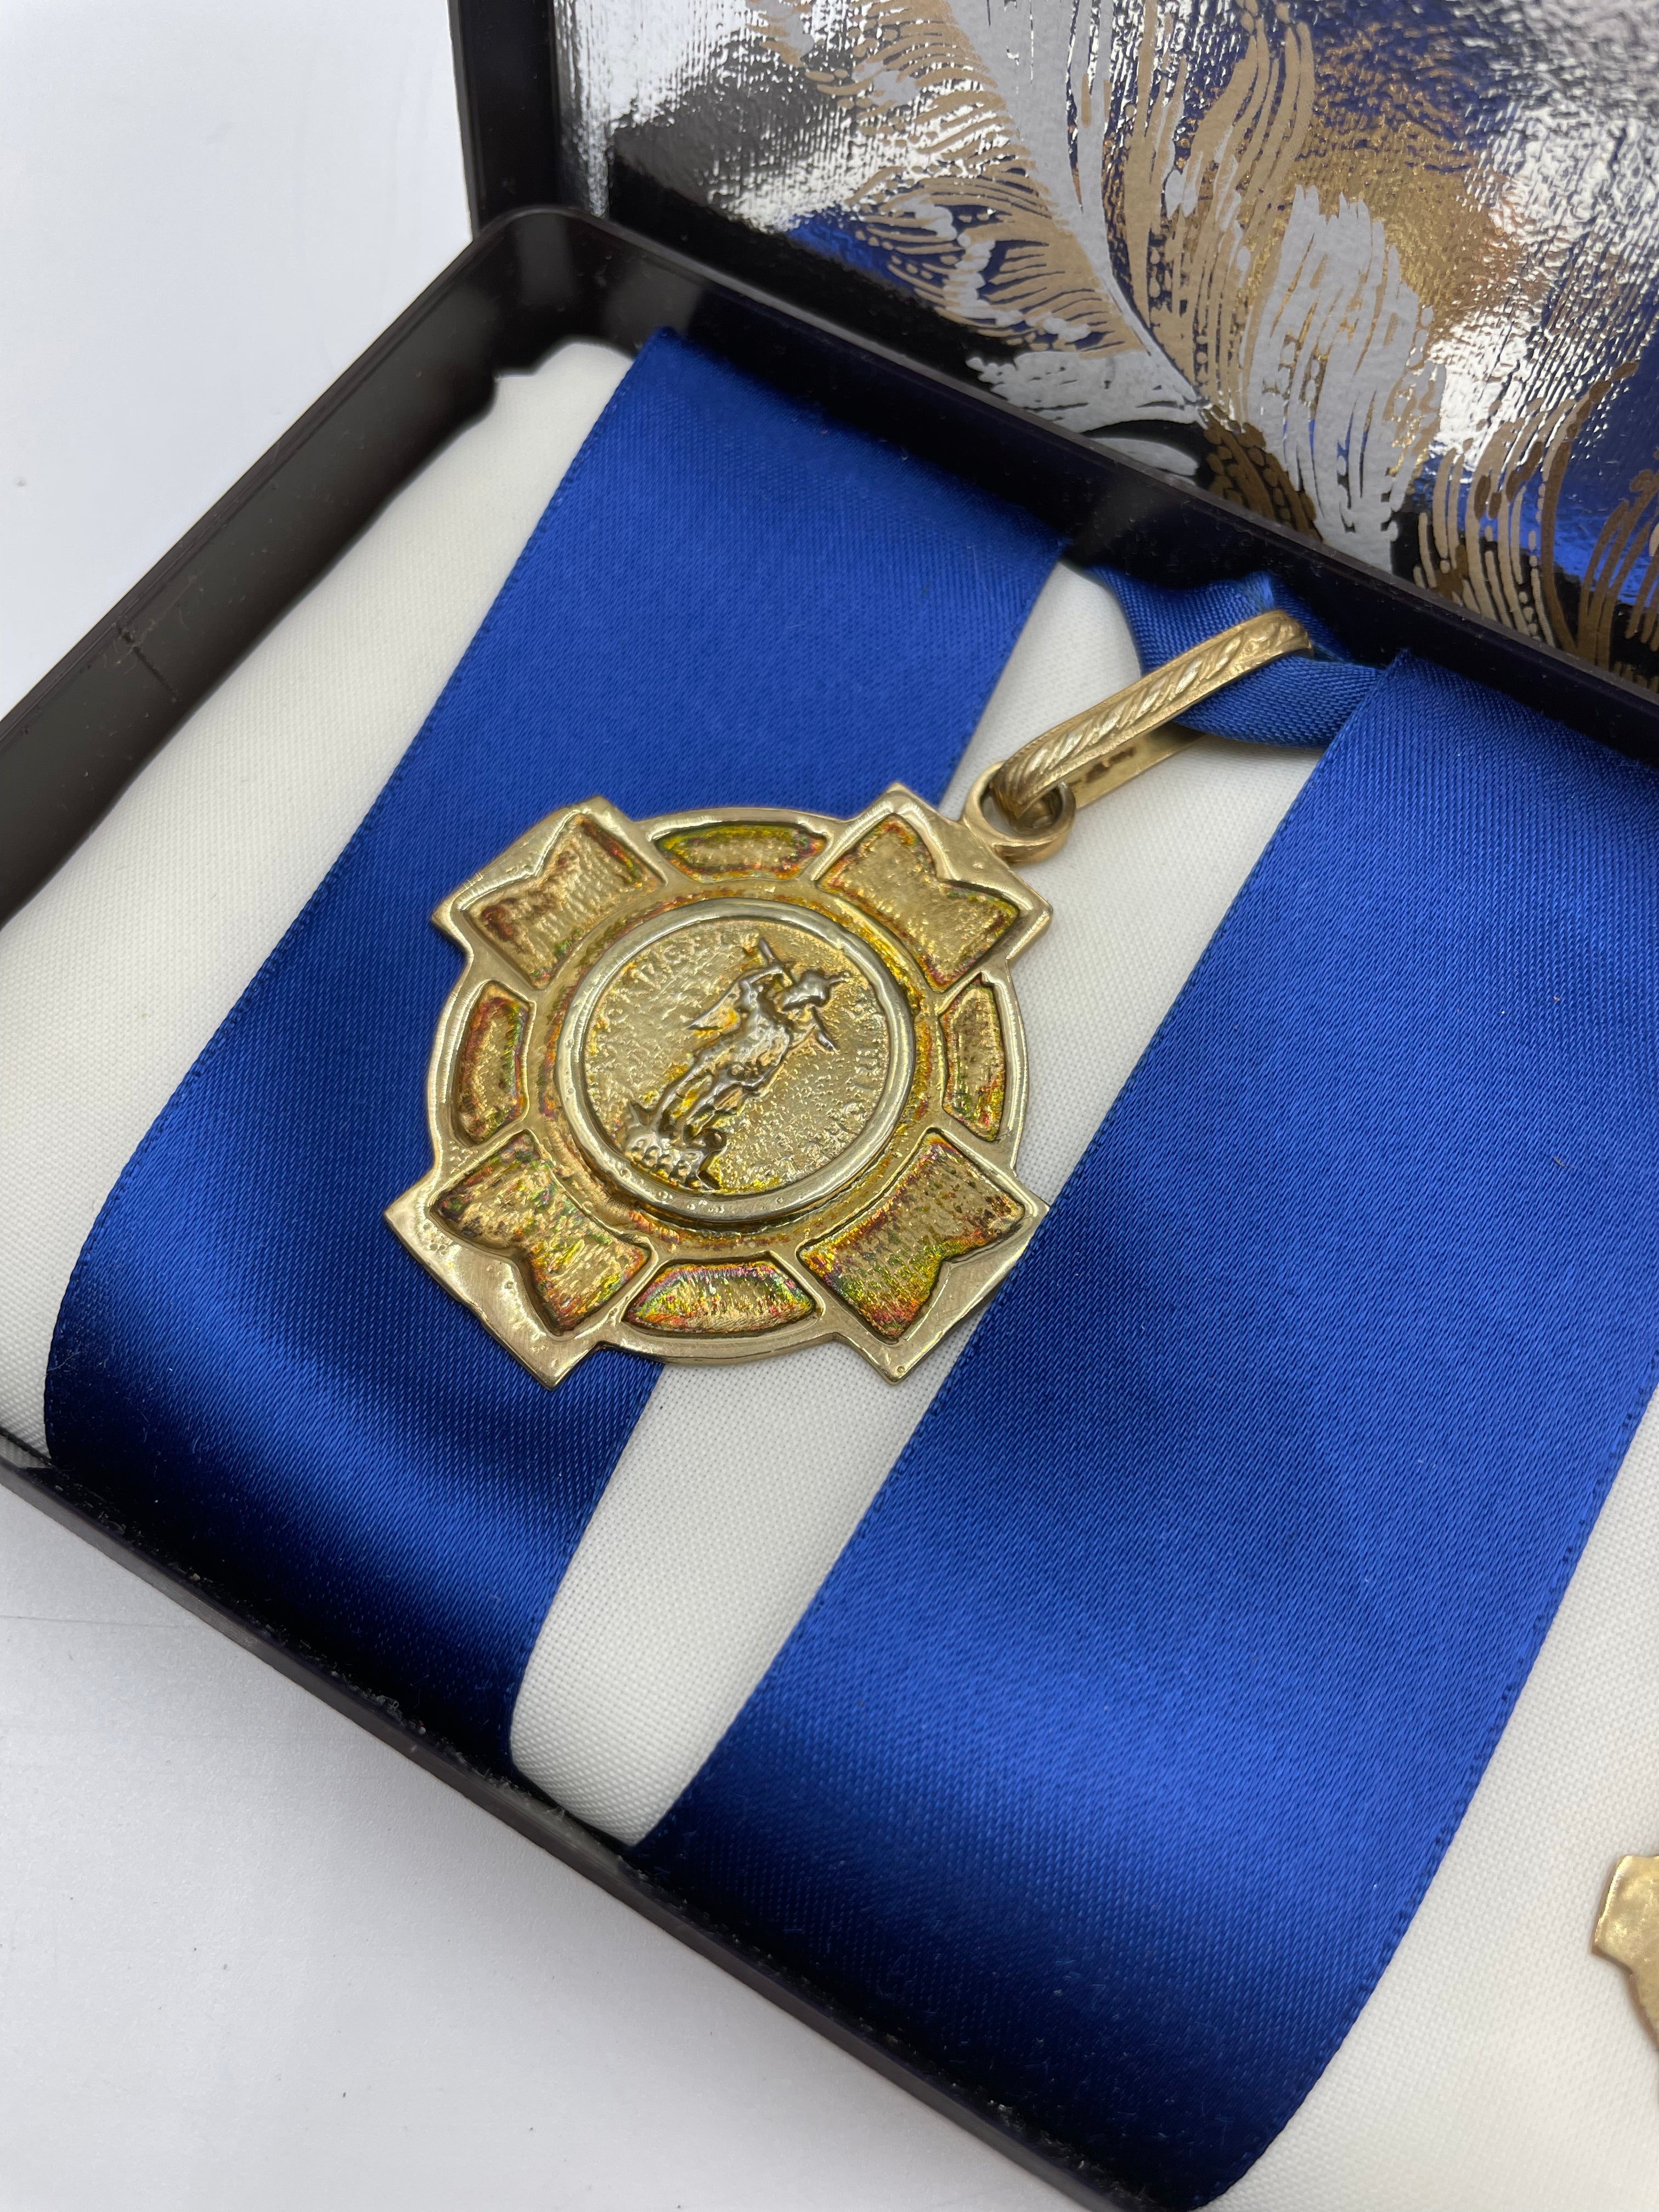 Order of St John Medal